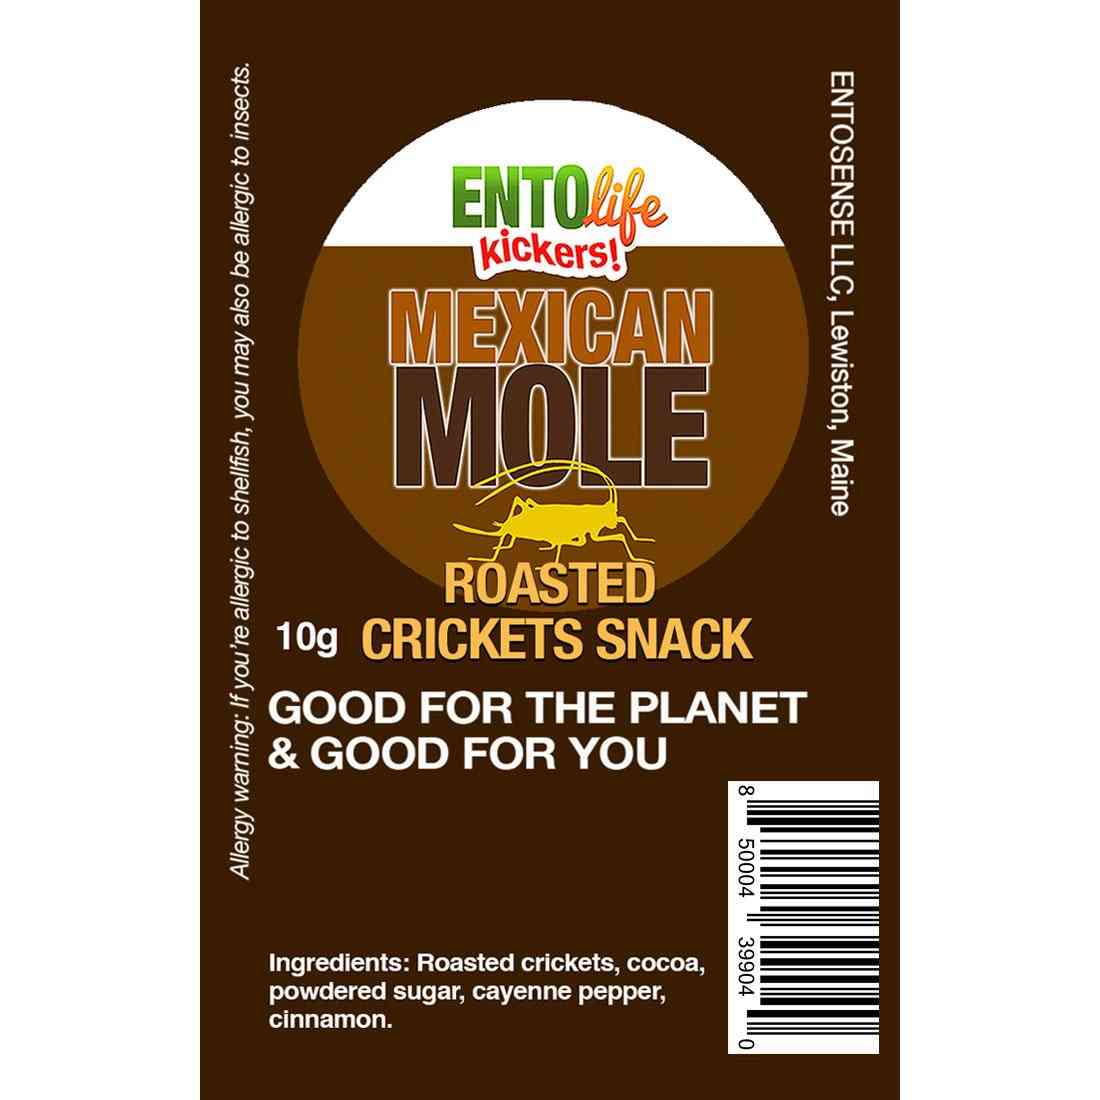 Mini-kickers Mexican Mole Flavored Cricket Snack